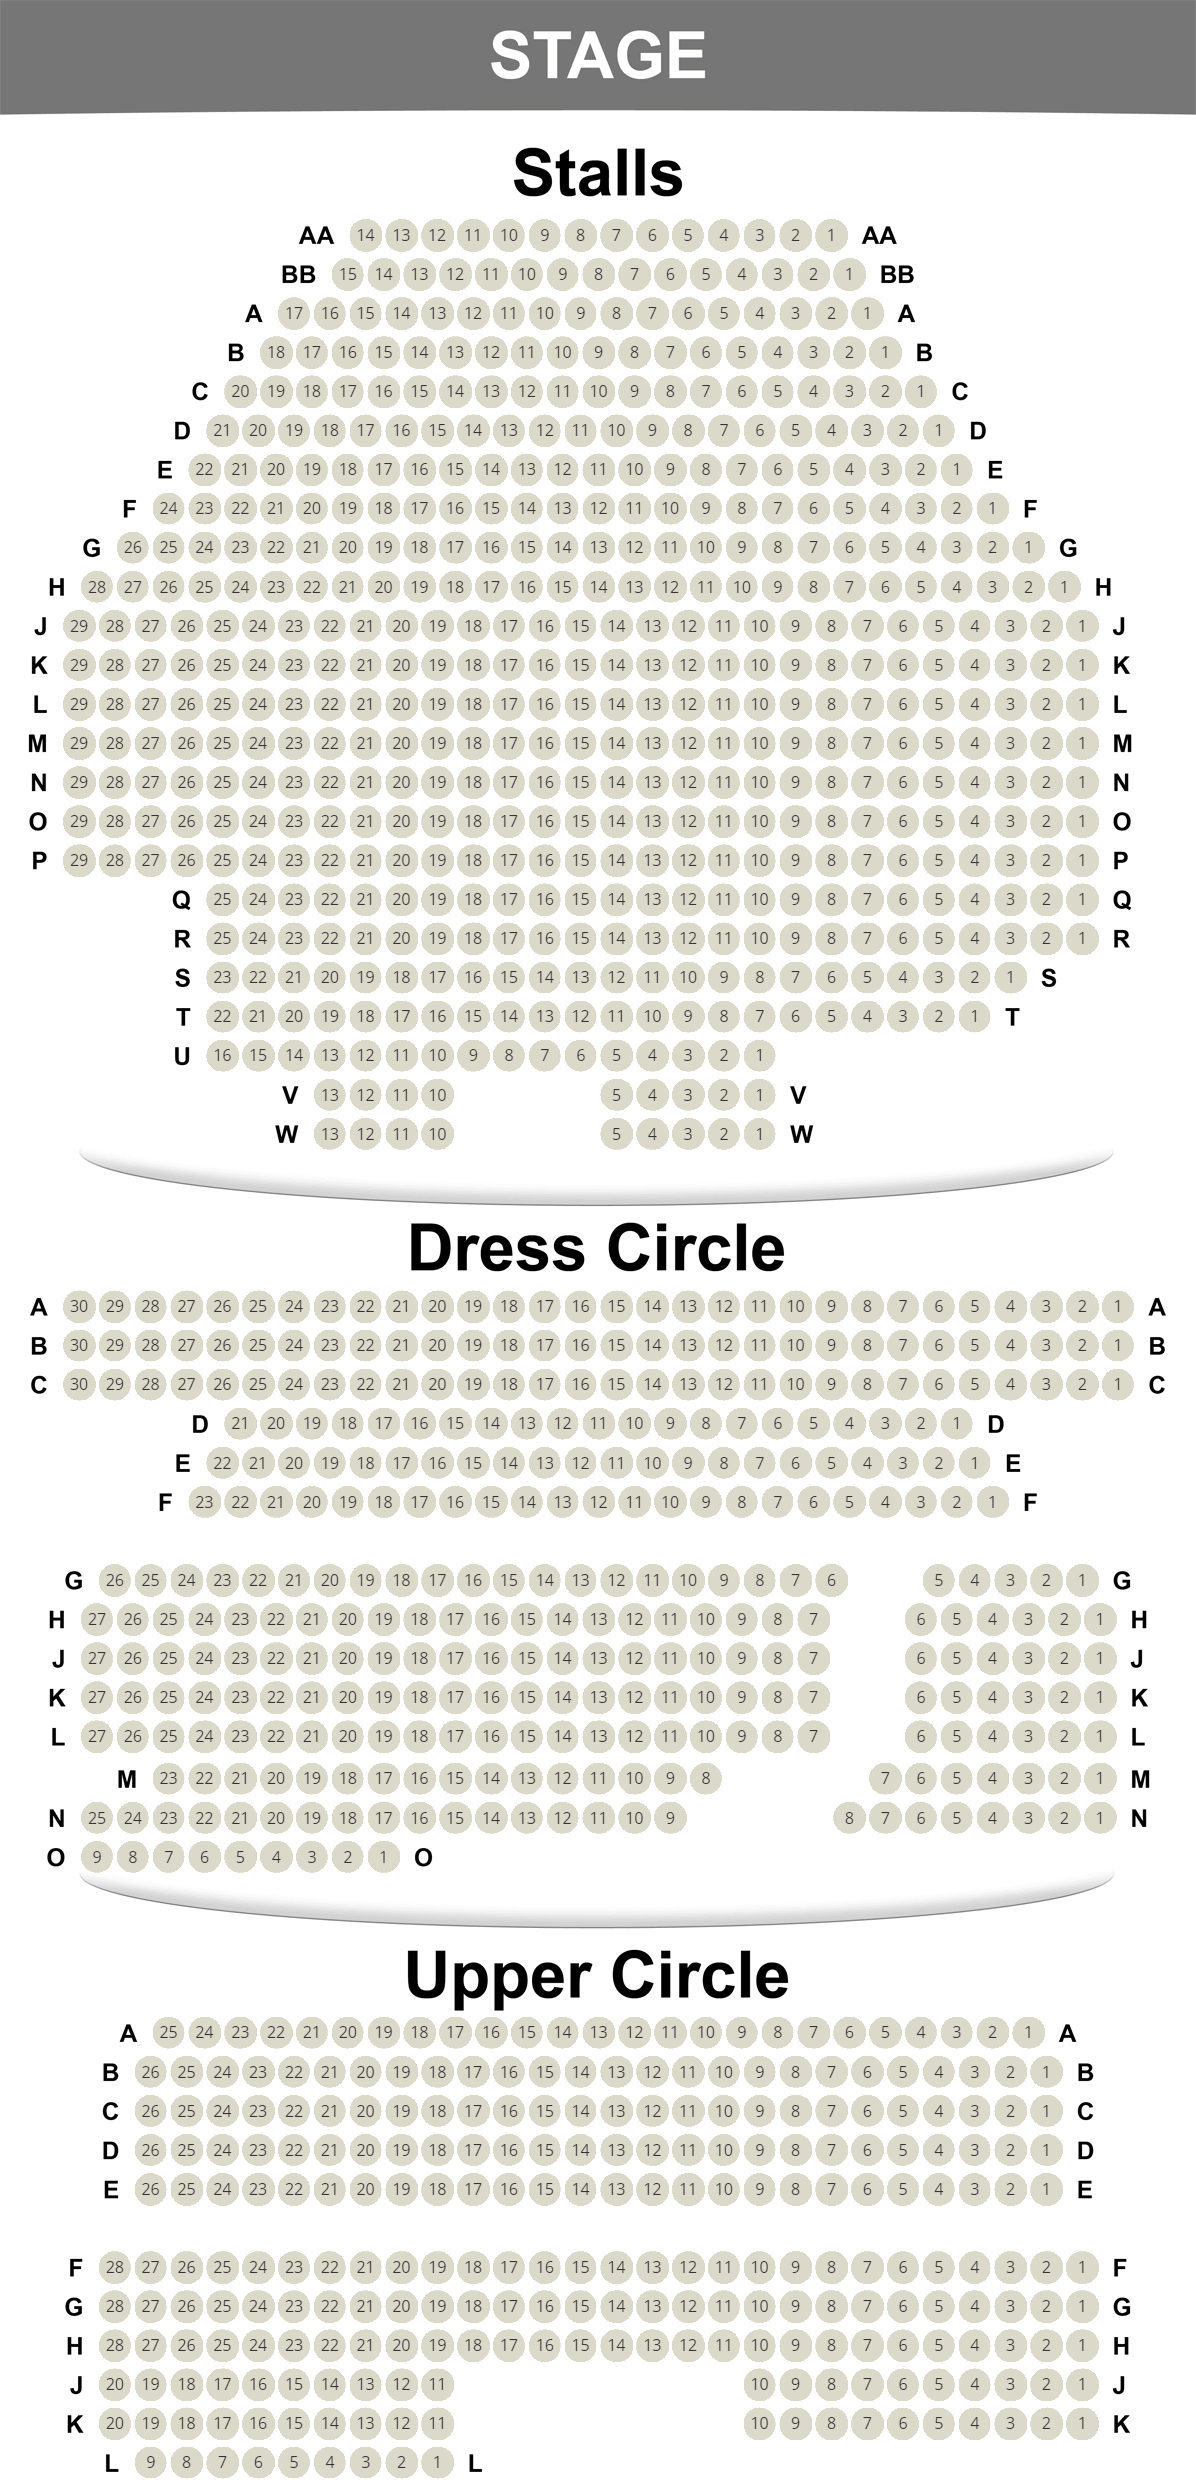 Savoy Theatre seating plan